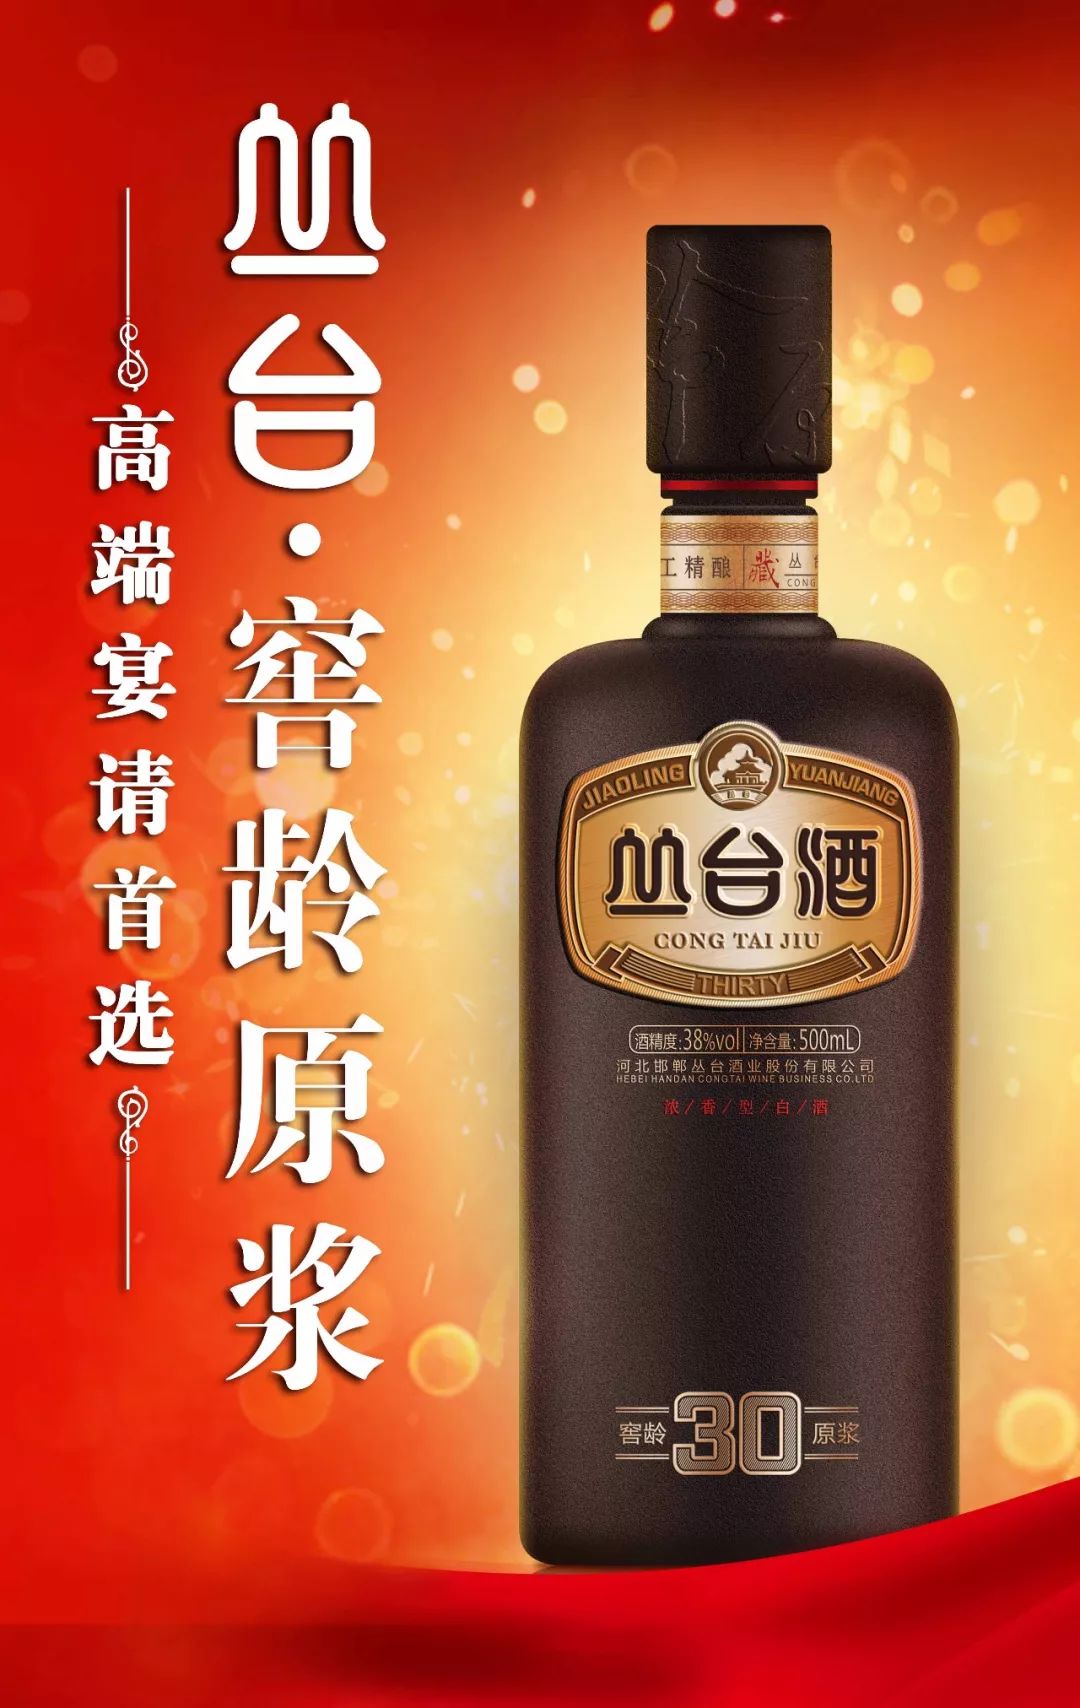 丛台酒 logo图片